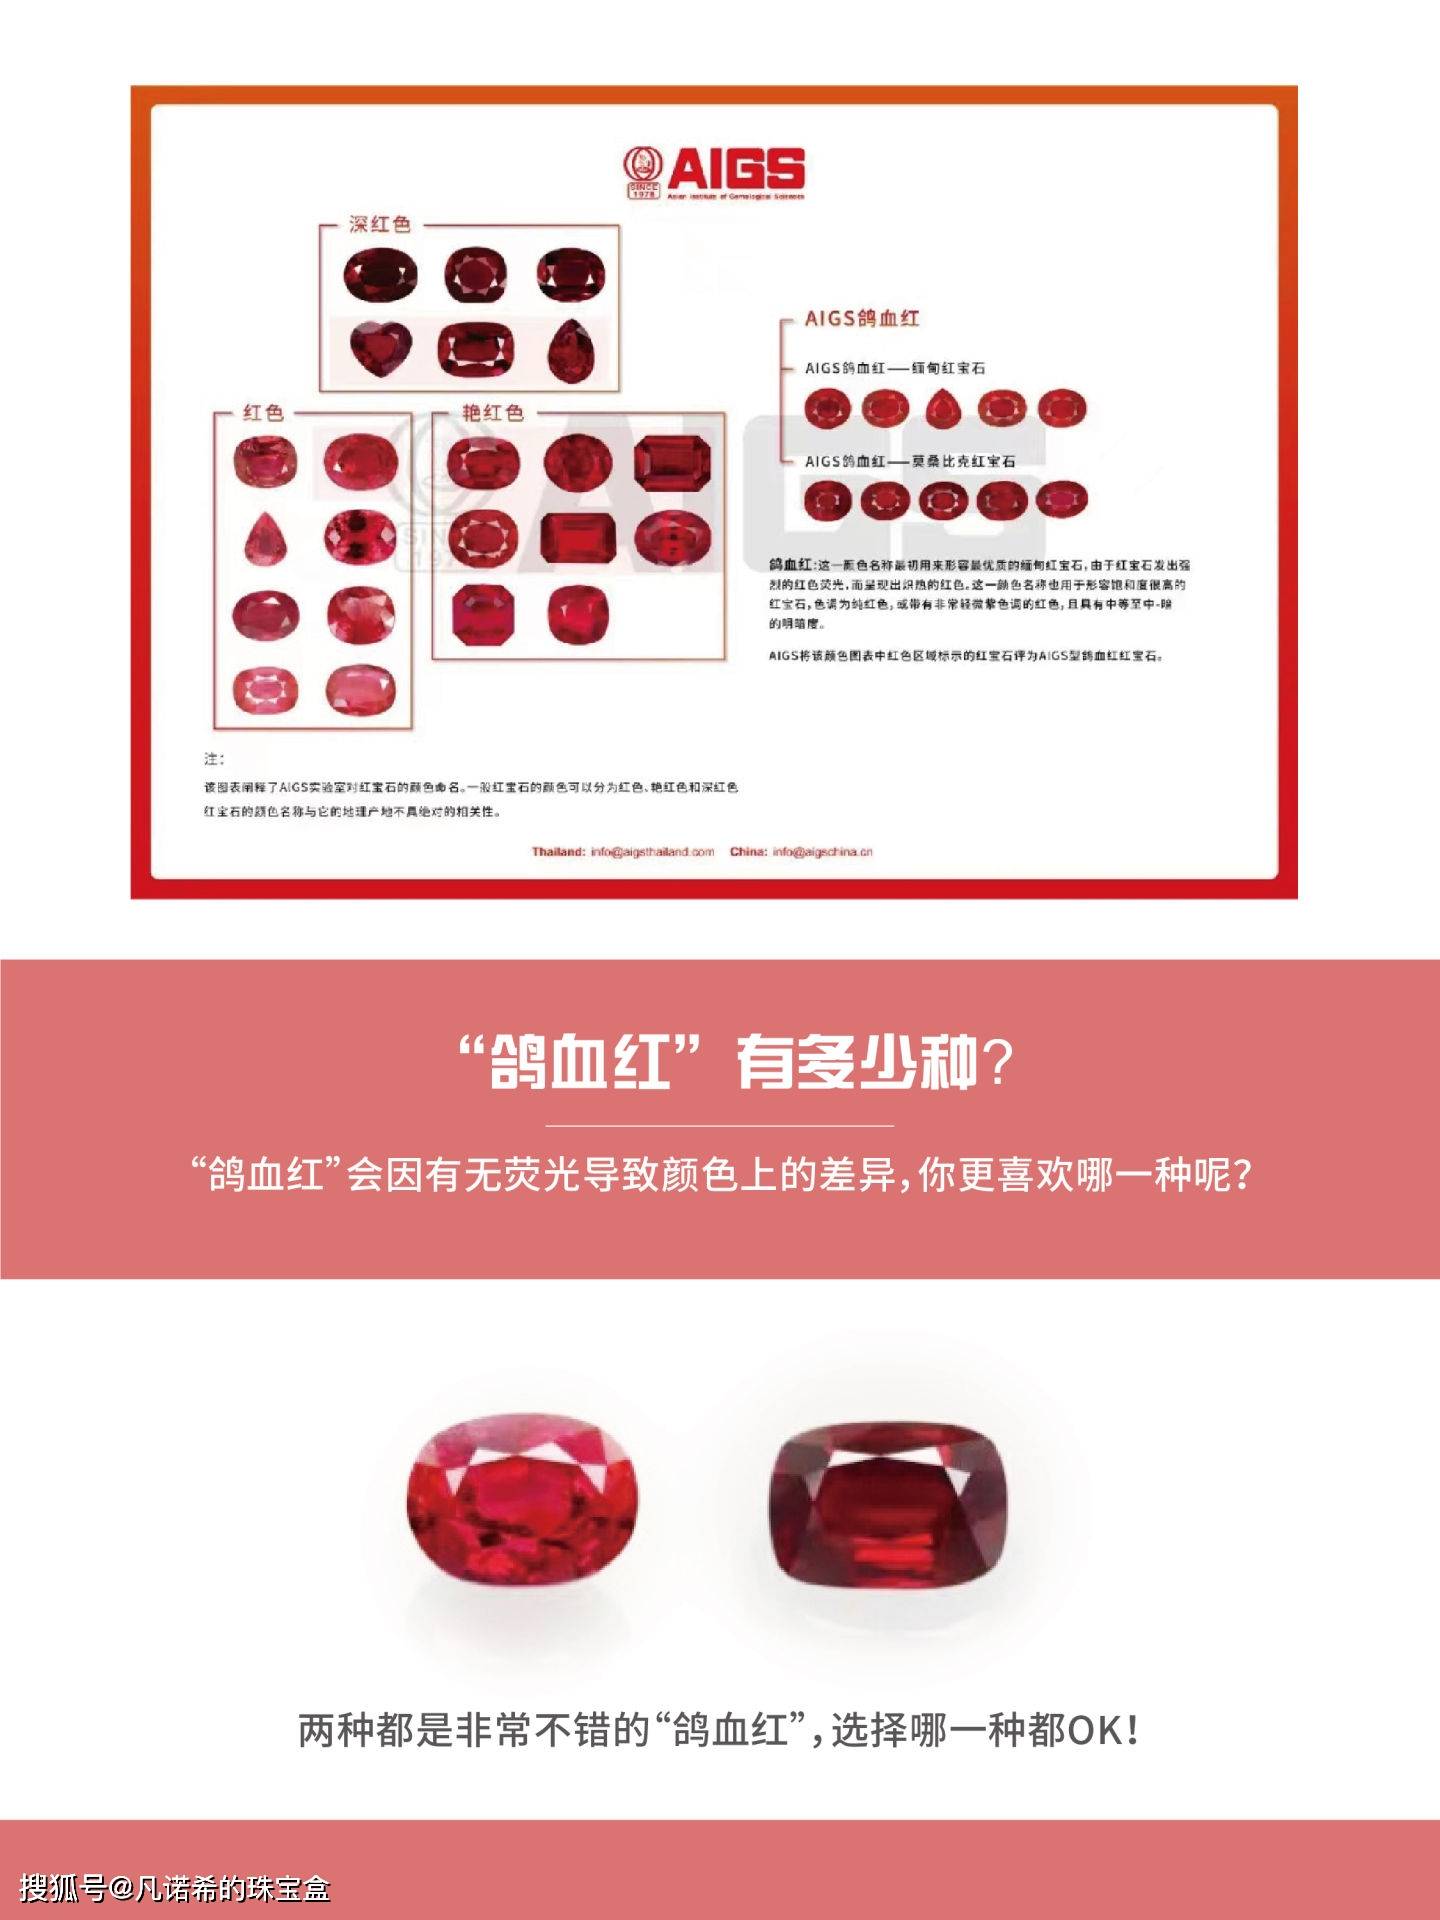 红宝石颜色等级示例图图片